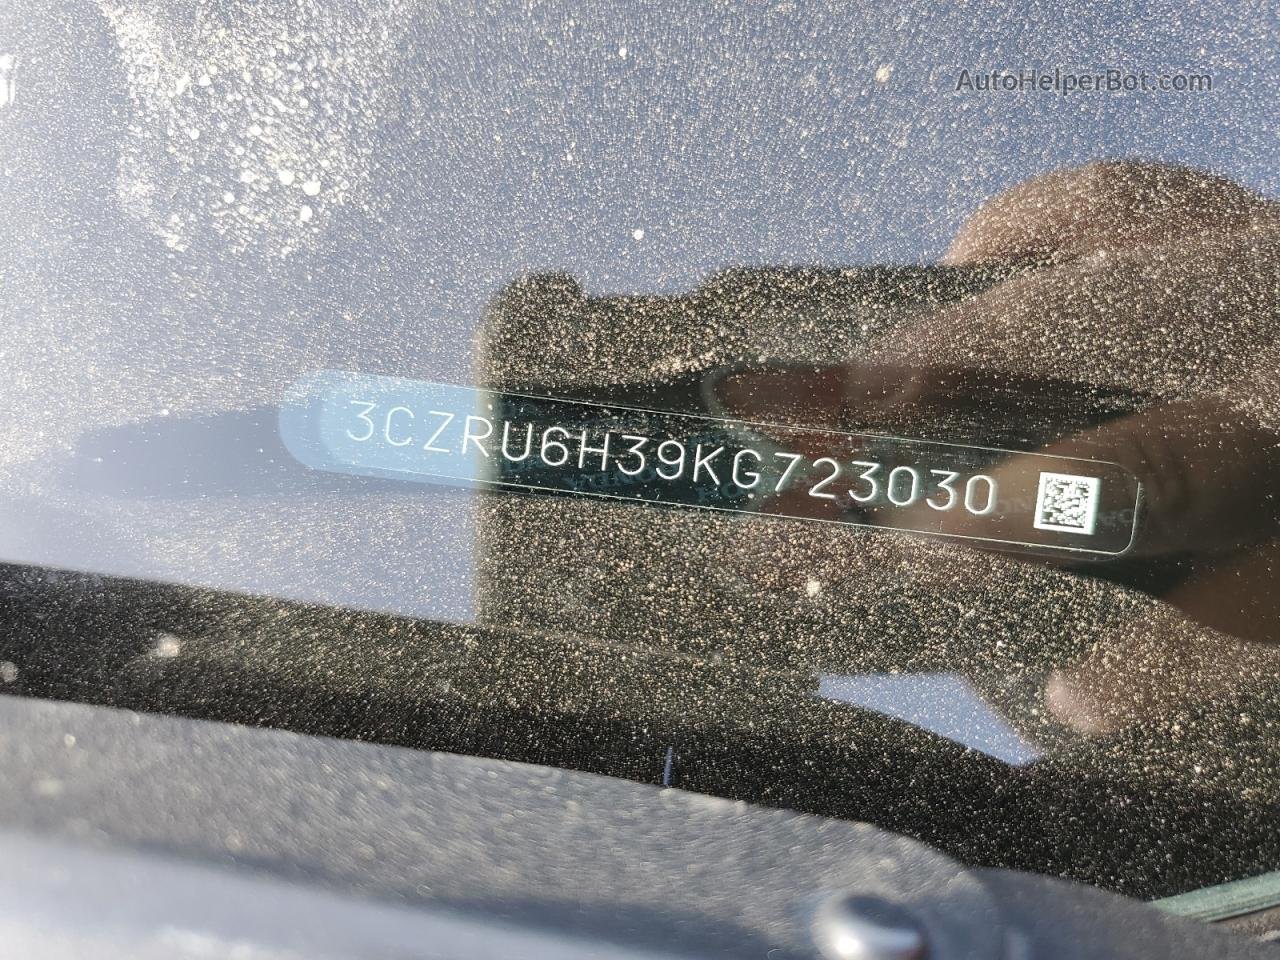 2019 Honda Hr-v Lx Черный vin: 3CZRU6H39KG723030